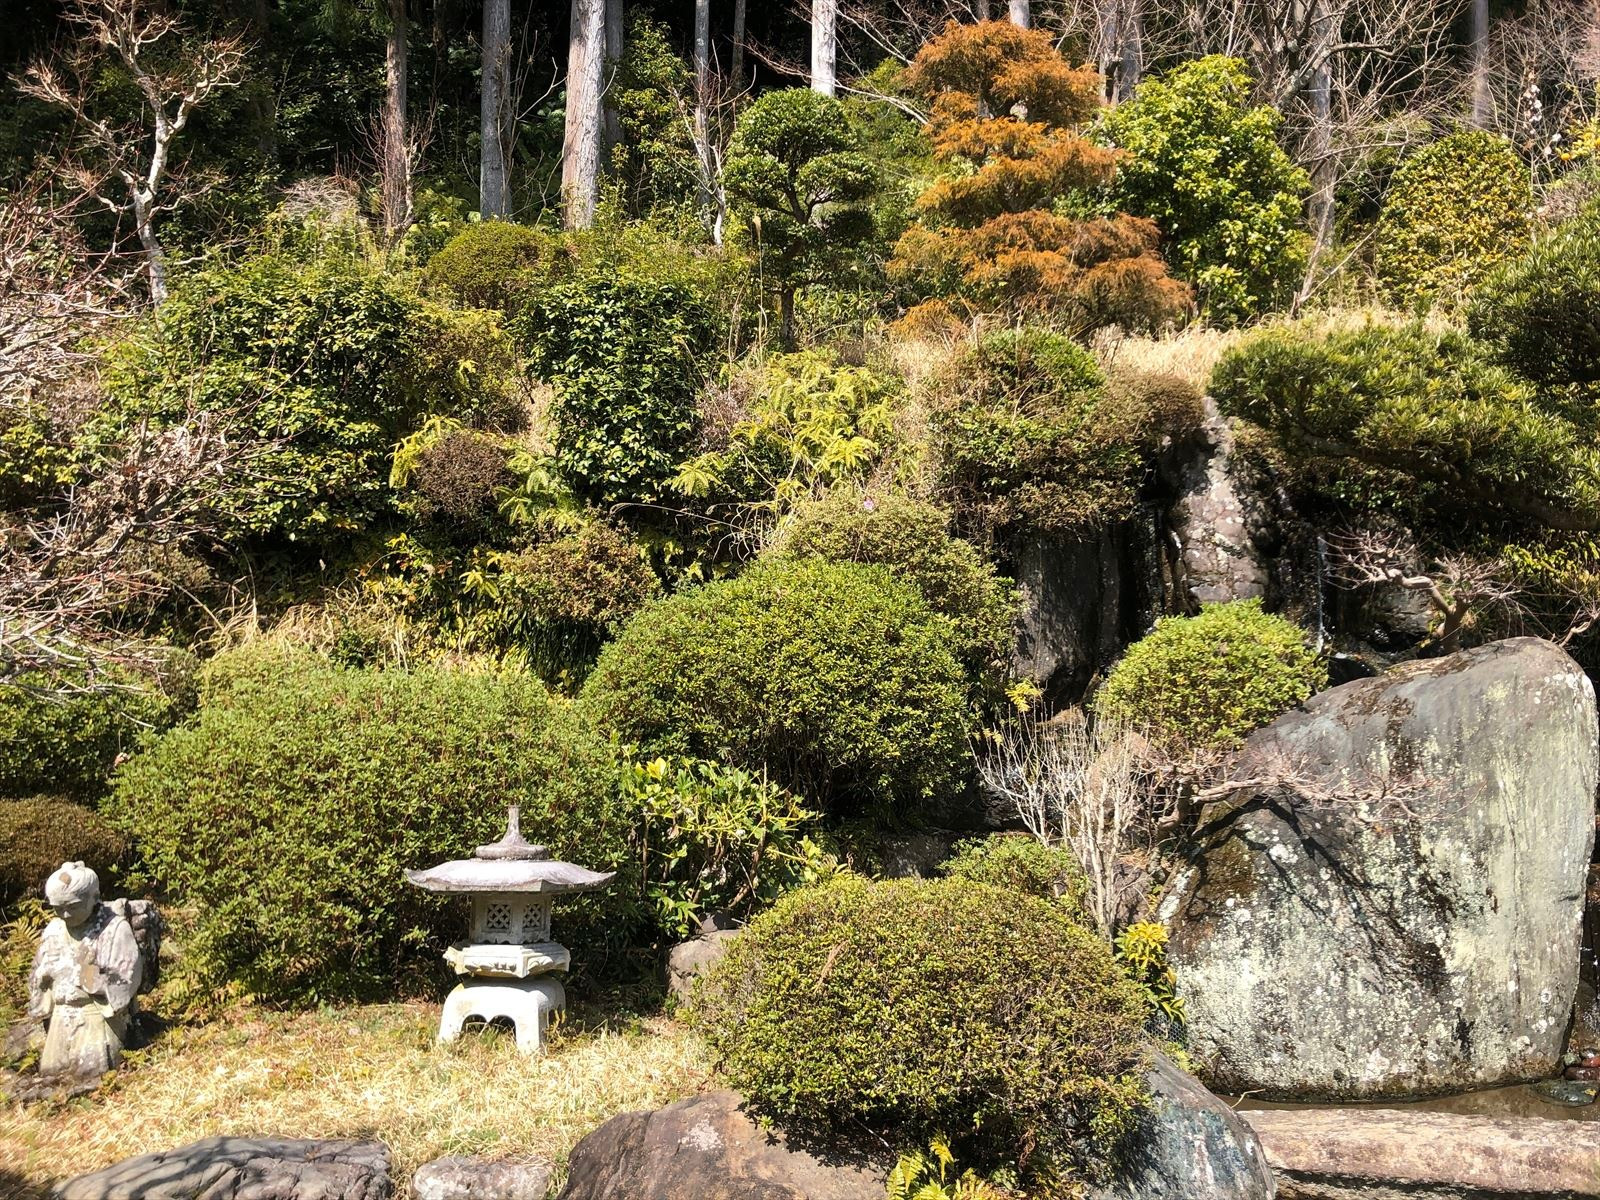 島田市のお寺ではブログで境内の様子をご紹介しております